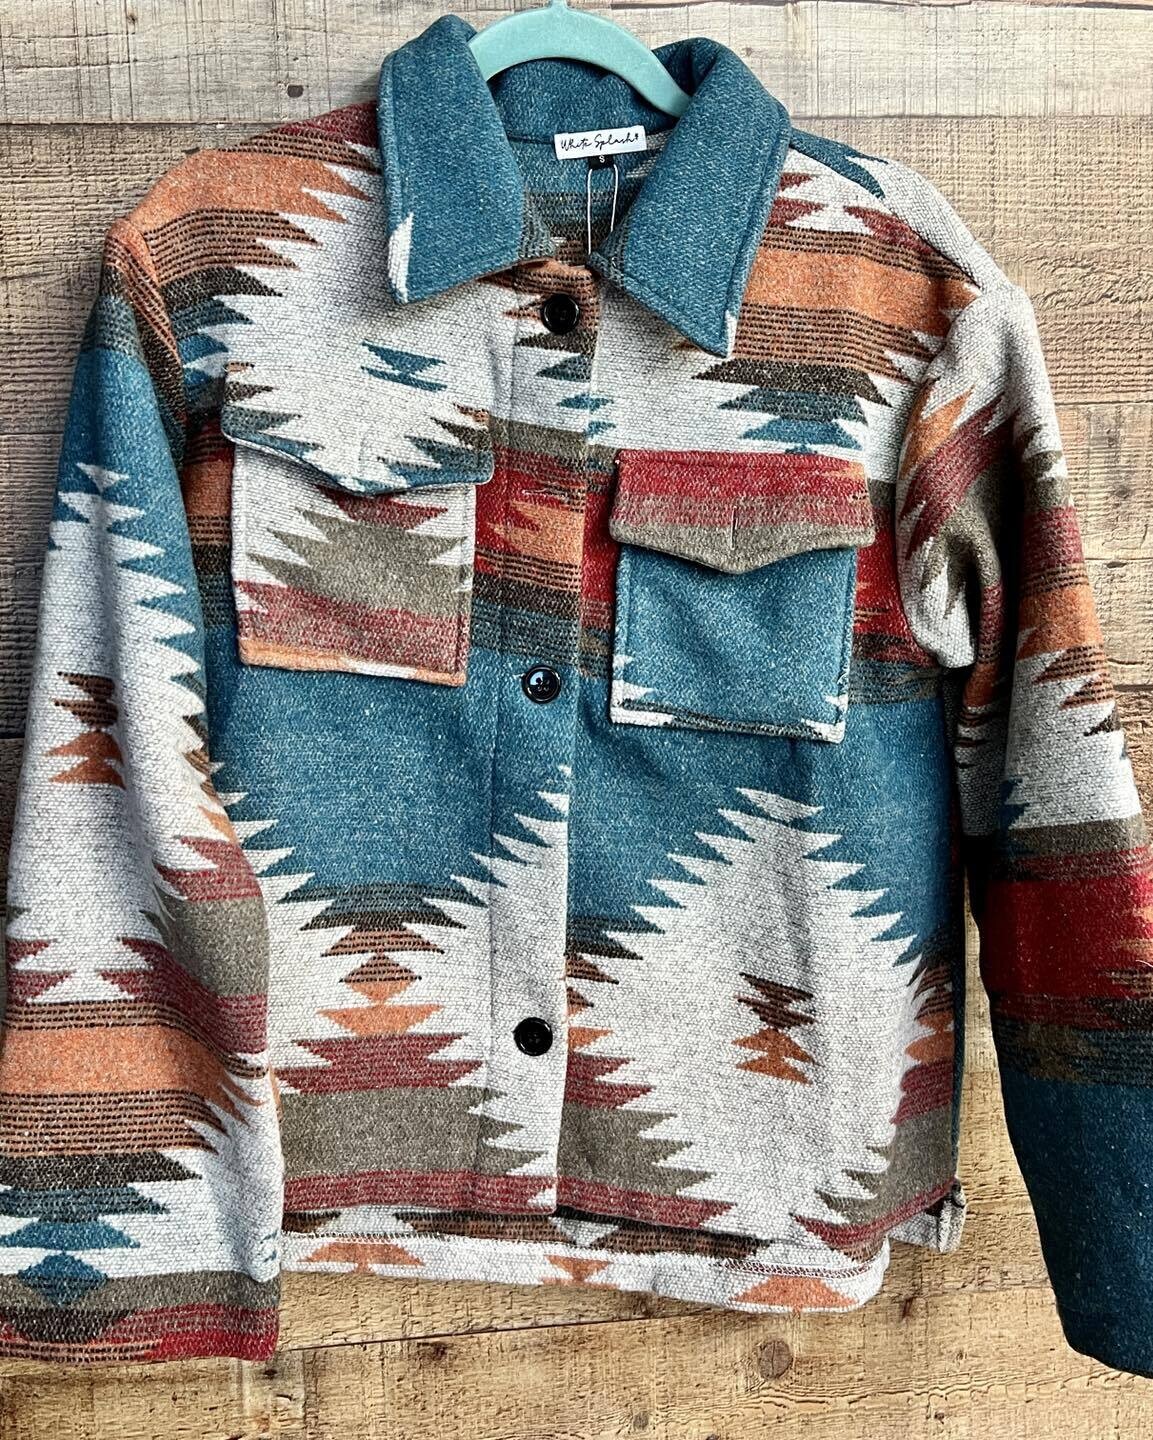 Aztec Print Jacket